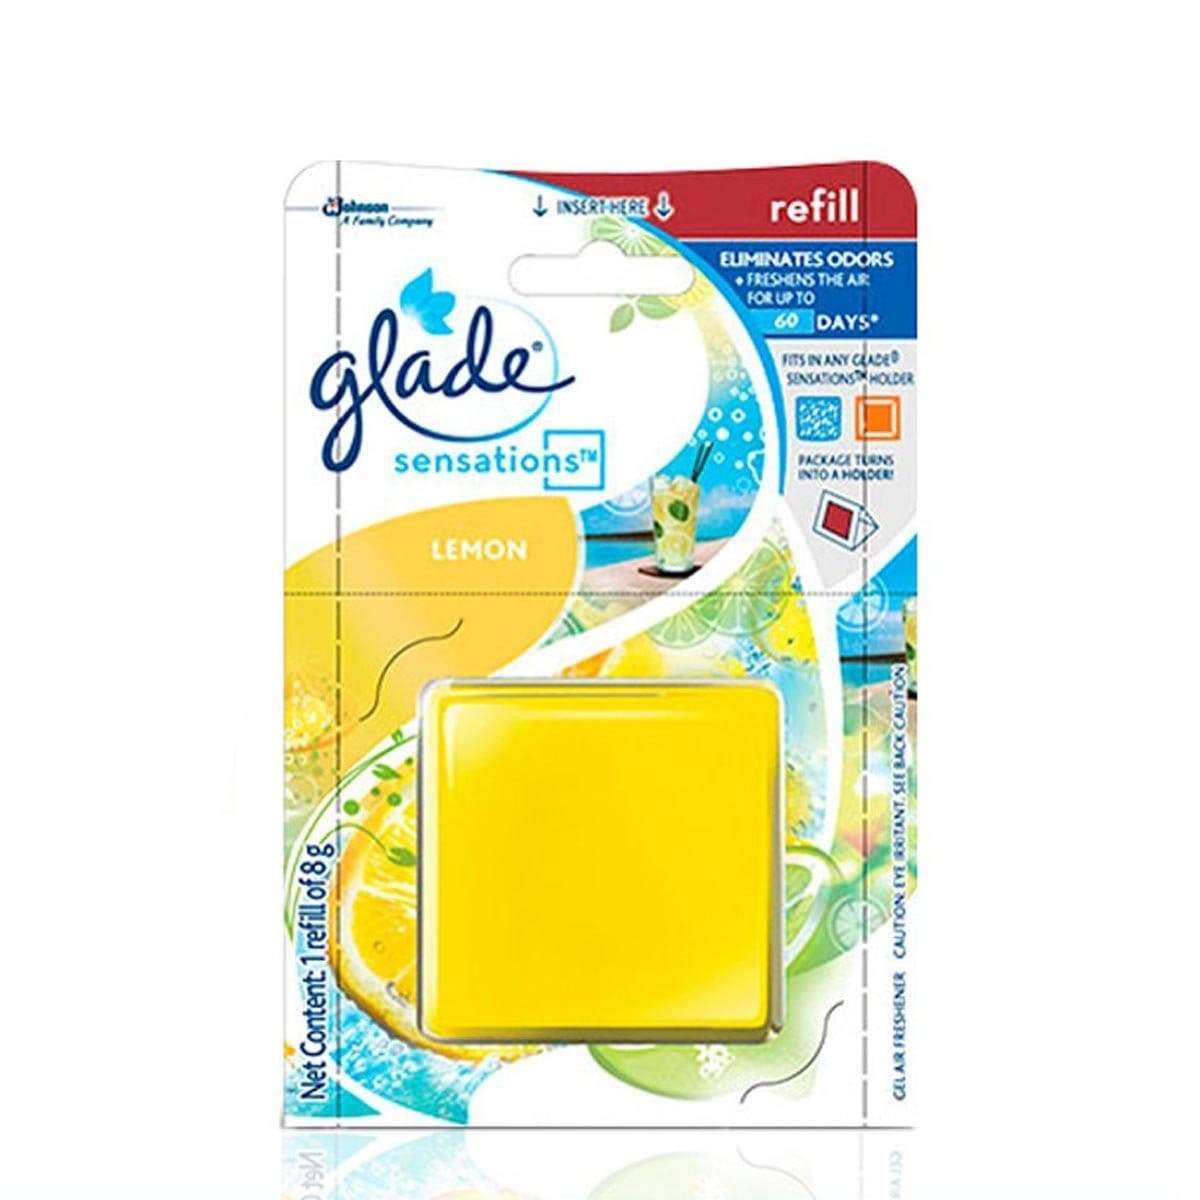 Glade Sensations Refill Lemon Car Air Freshener 8g